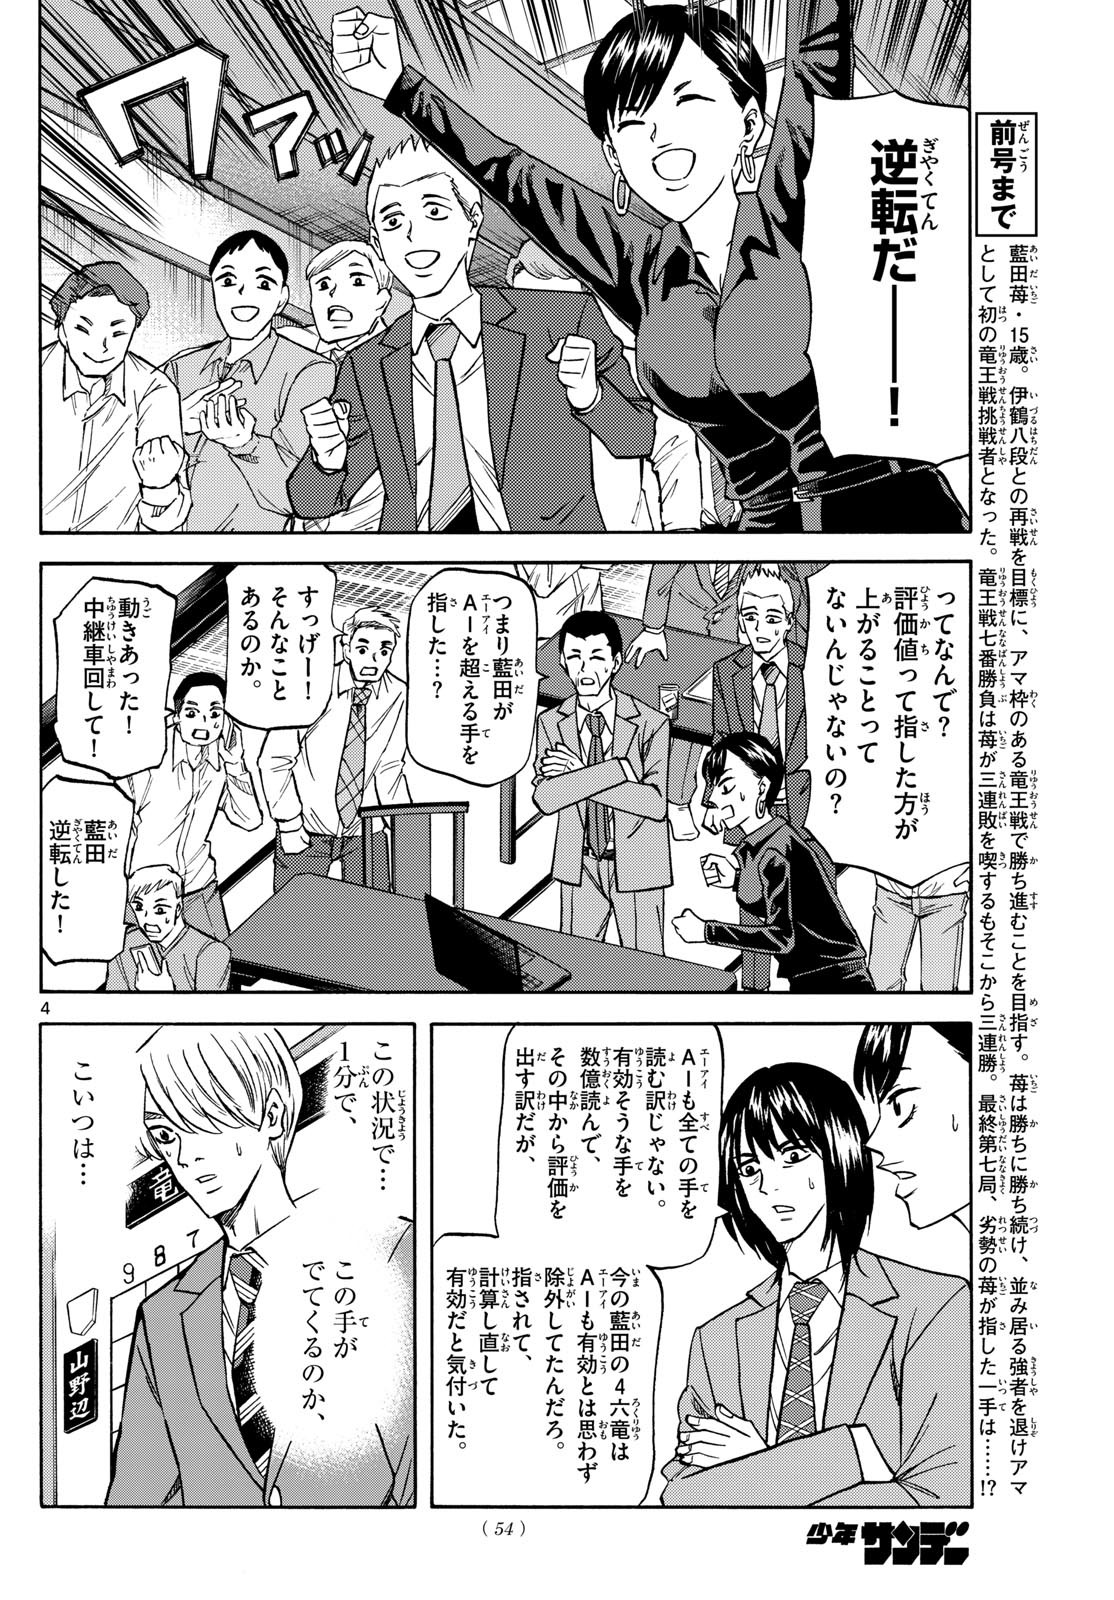 Ryu-to-Ichigo - Chapter 179 - Page 4